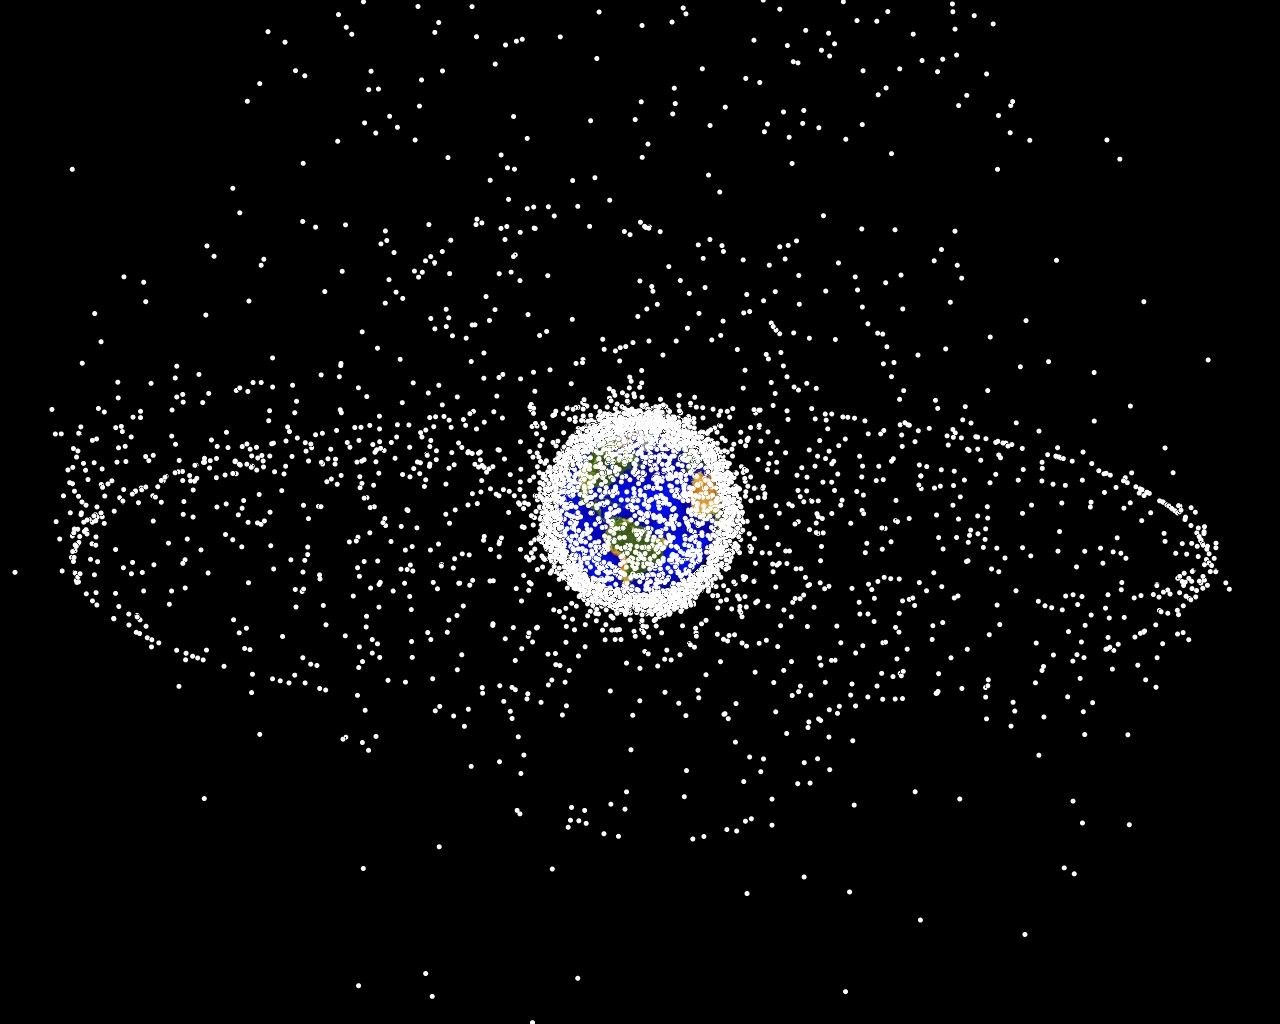 Компьютерная модель распределения космических объектов в космосе, согласно описанию NASA 95 % из них являются мусором